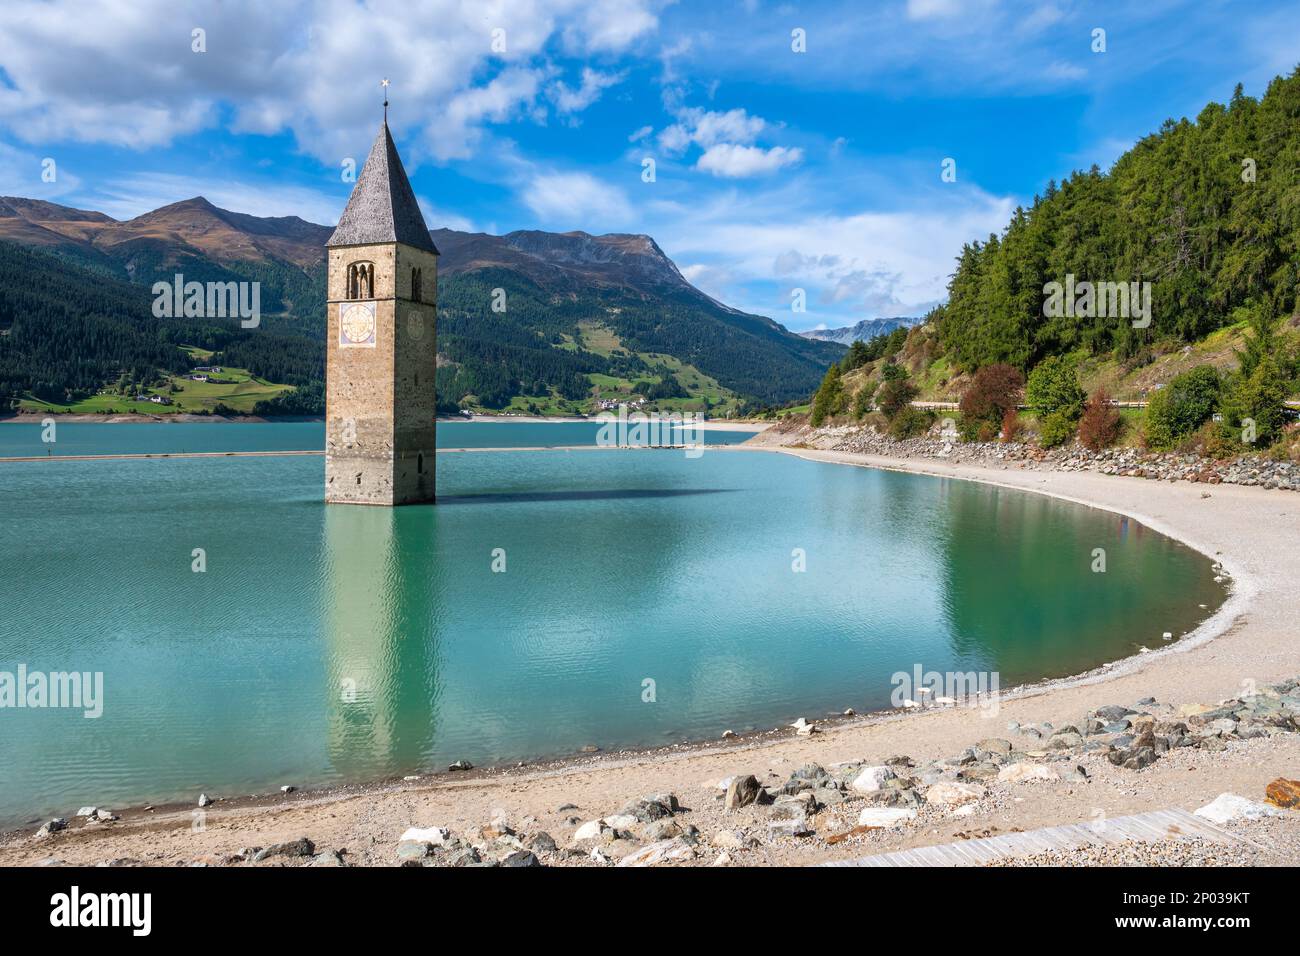 Der Glockenturm der Kirche stammt aus dem überfluteten Dorf Graun - Curon im Vinschgau, Südtirol, Italien Stockfoto